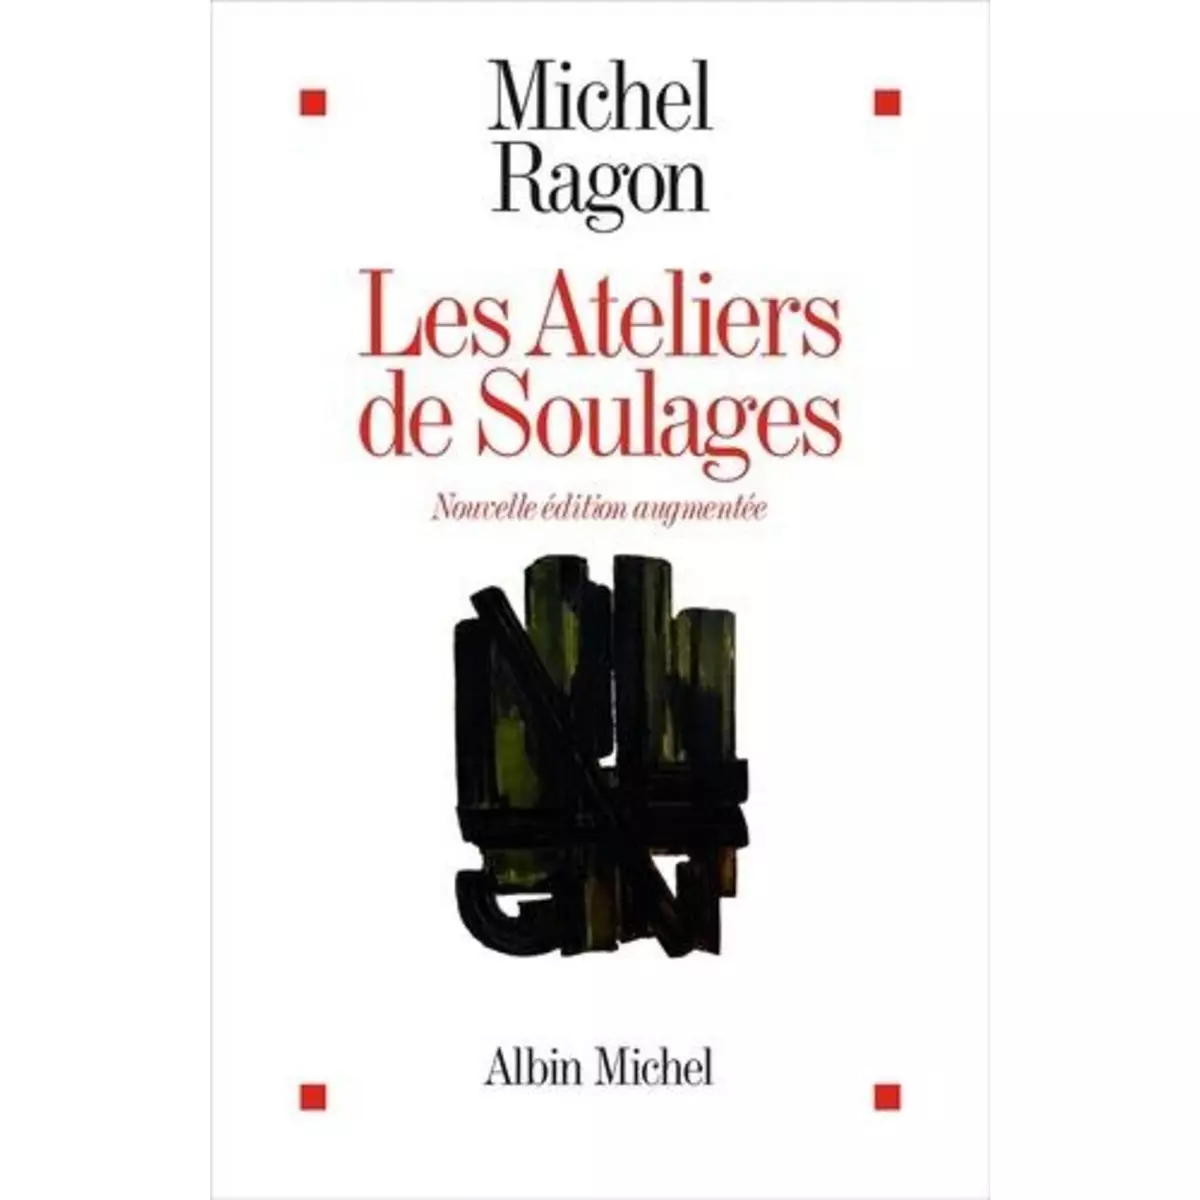  LES ATELIERS DE SOULAGES. EDITION REVUE ET AUGMENTEE, Ragon Michel